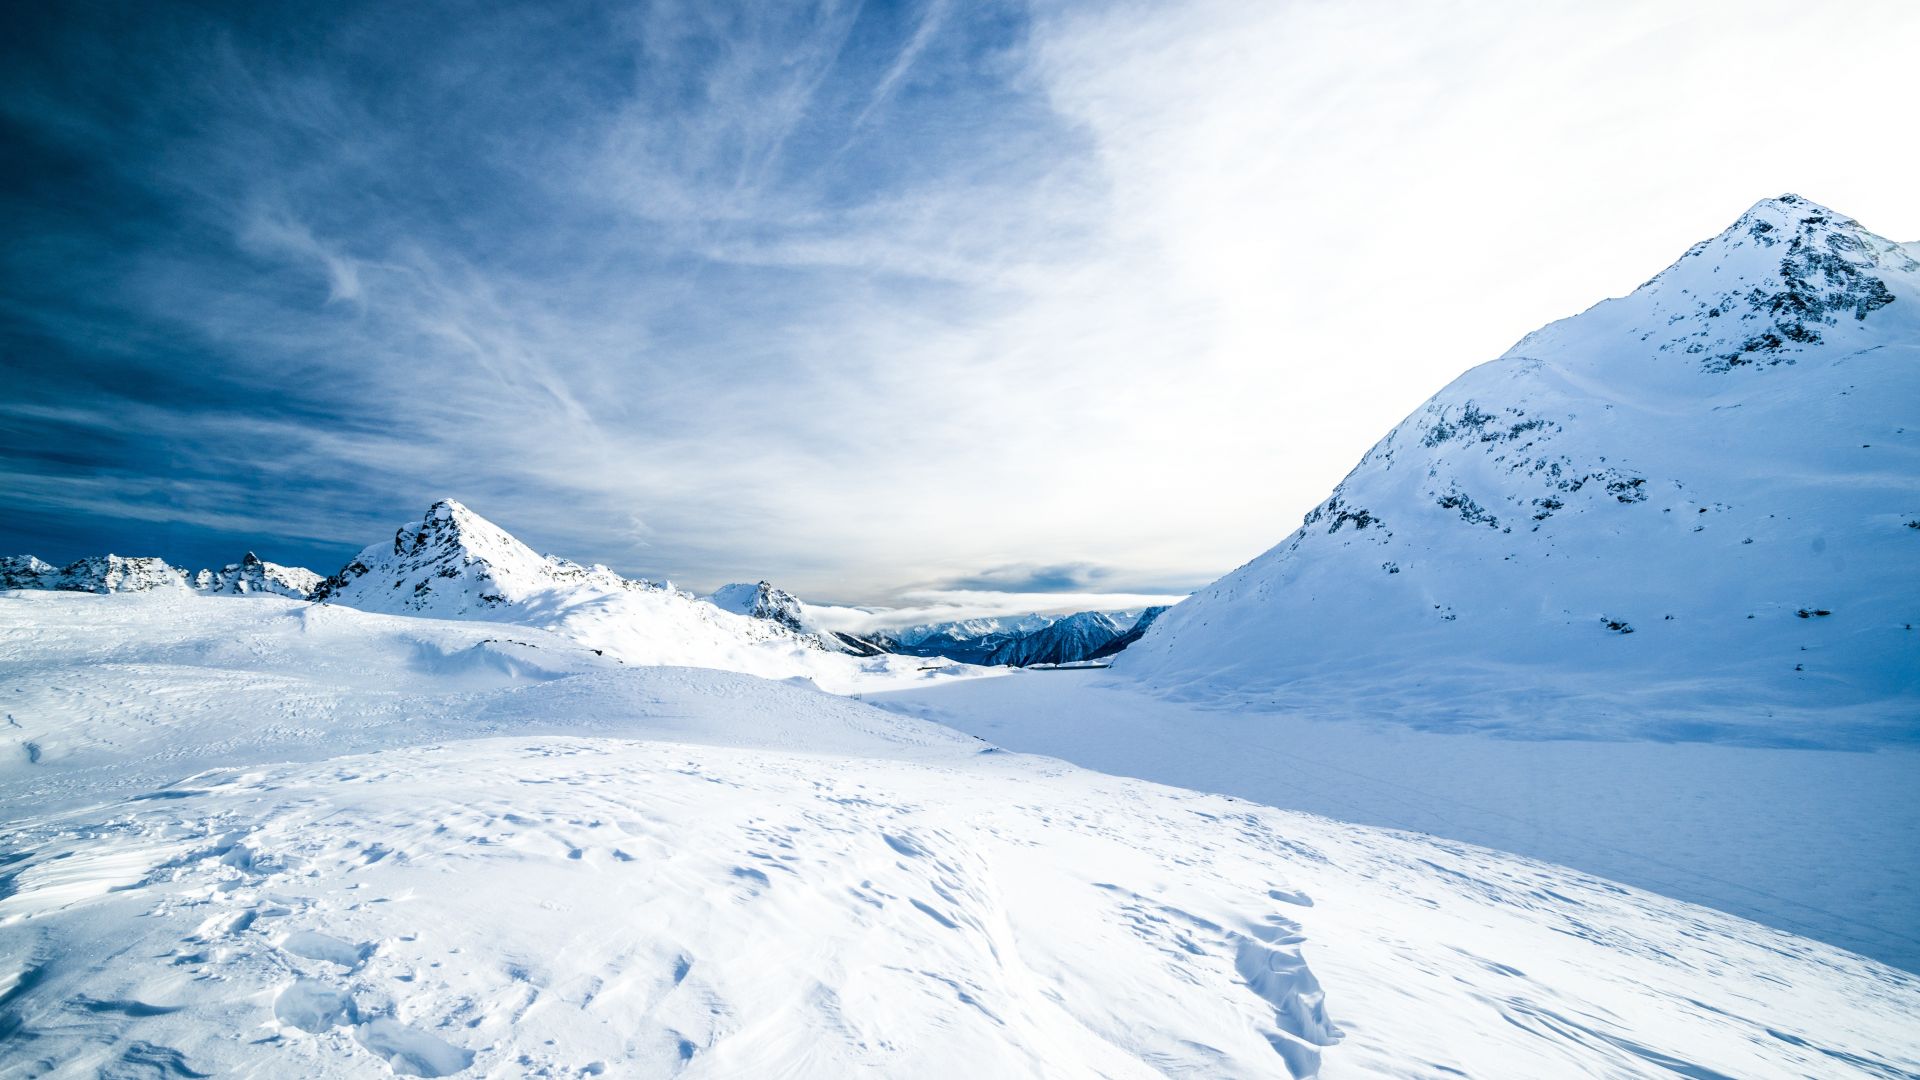 Wallpaper Snow mountains landscape